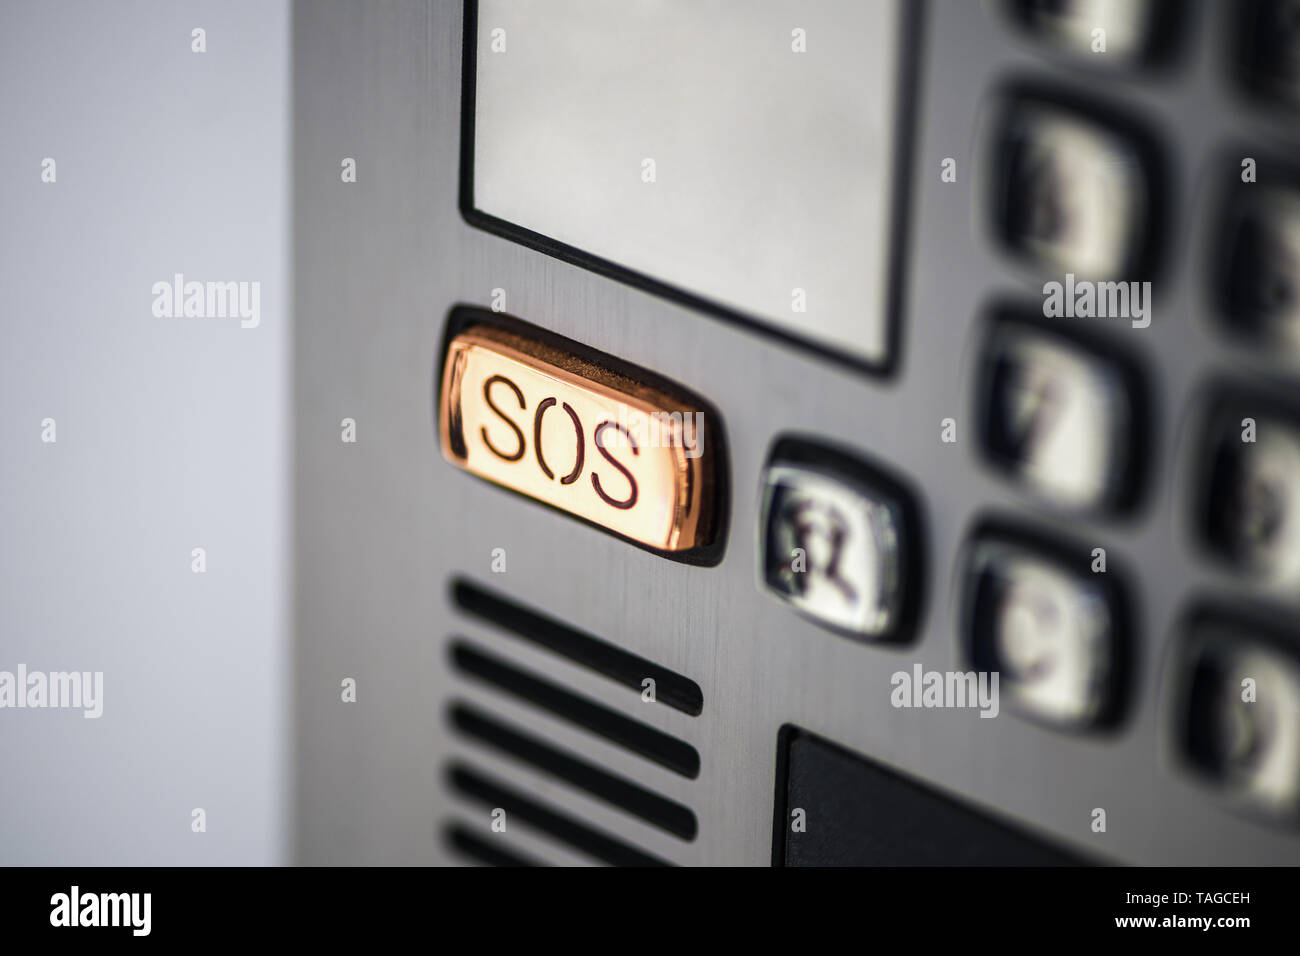 Schaltfläche SOS. Die SOS-Taste am Gerät panel, Gegensprechanlage. Hilfe Taste Anrufen auf dem Bildschirm des Geräts in grau Metall Farbe. Stockfoto